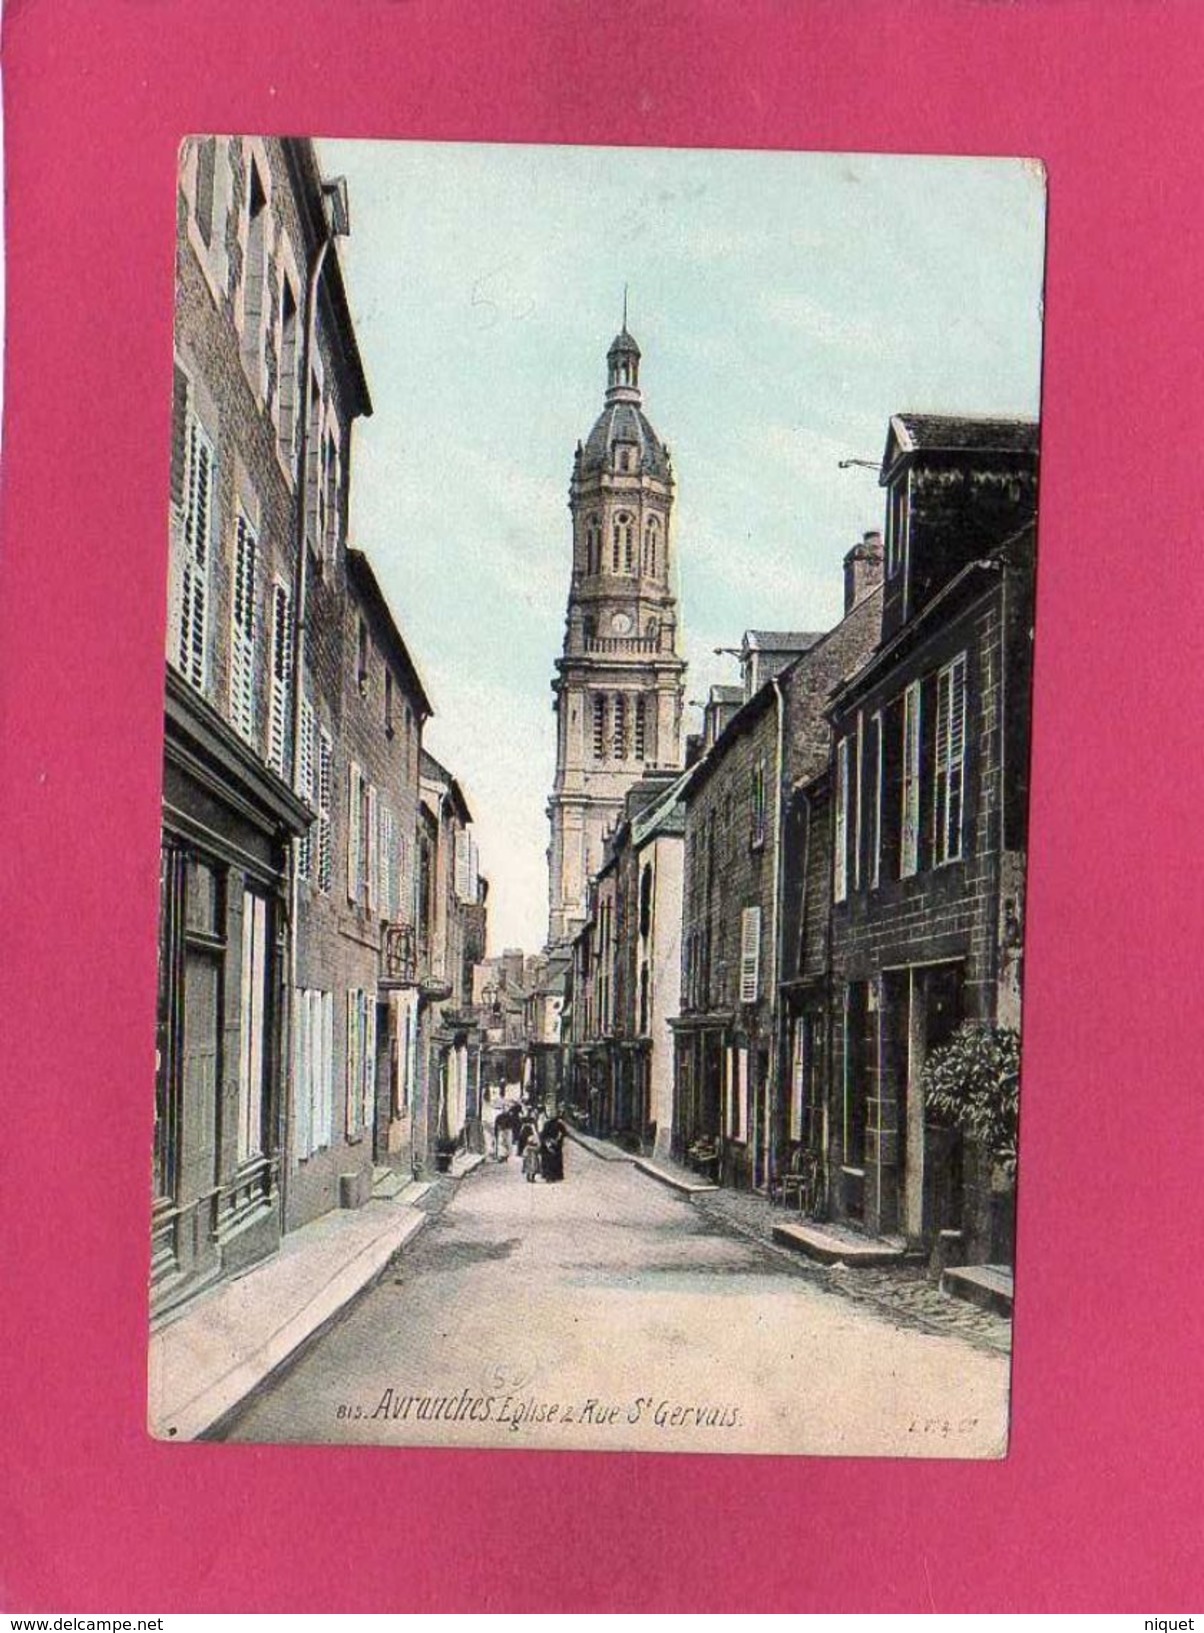 50 Manche, Avranches, Eglise, Rue St-Gervais, Animée, 1913, (L. V.) - Avranches